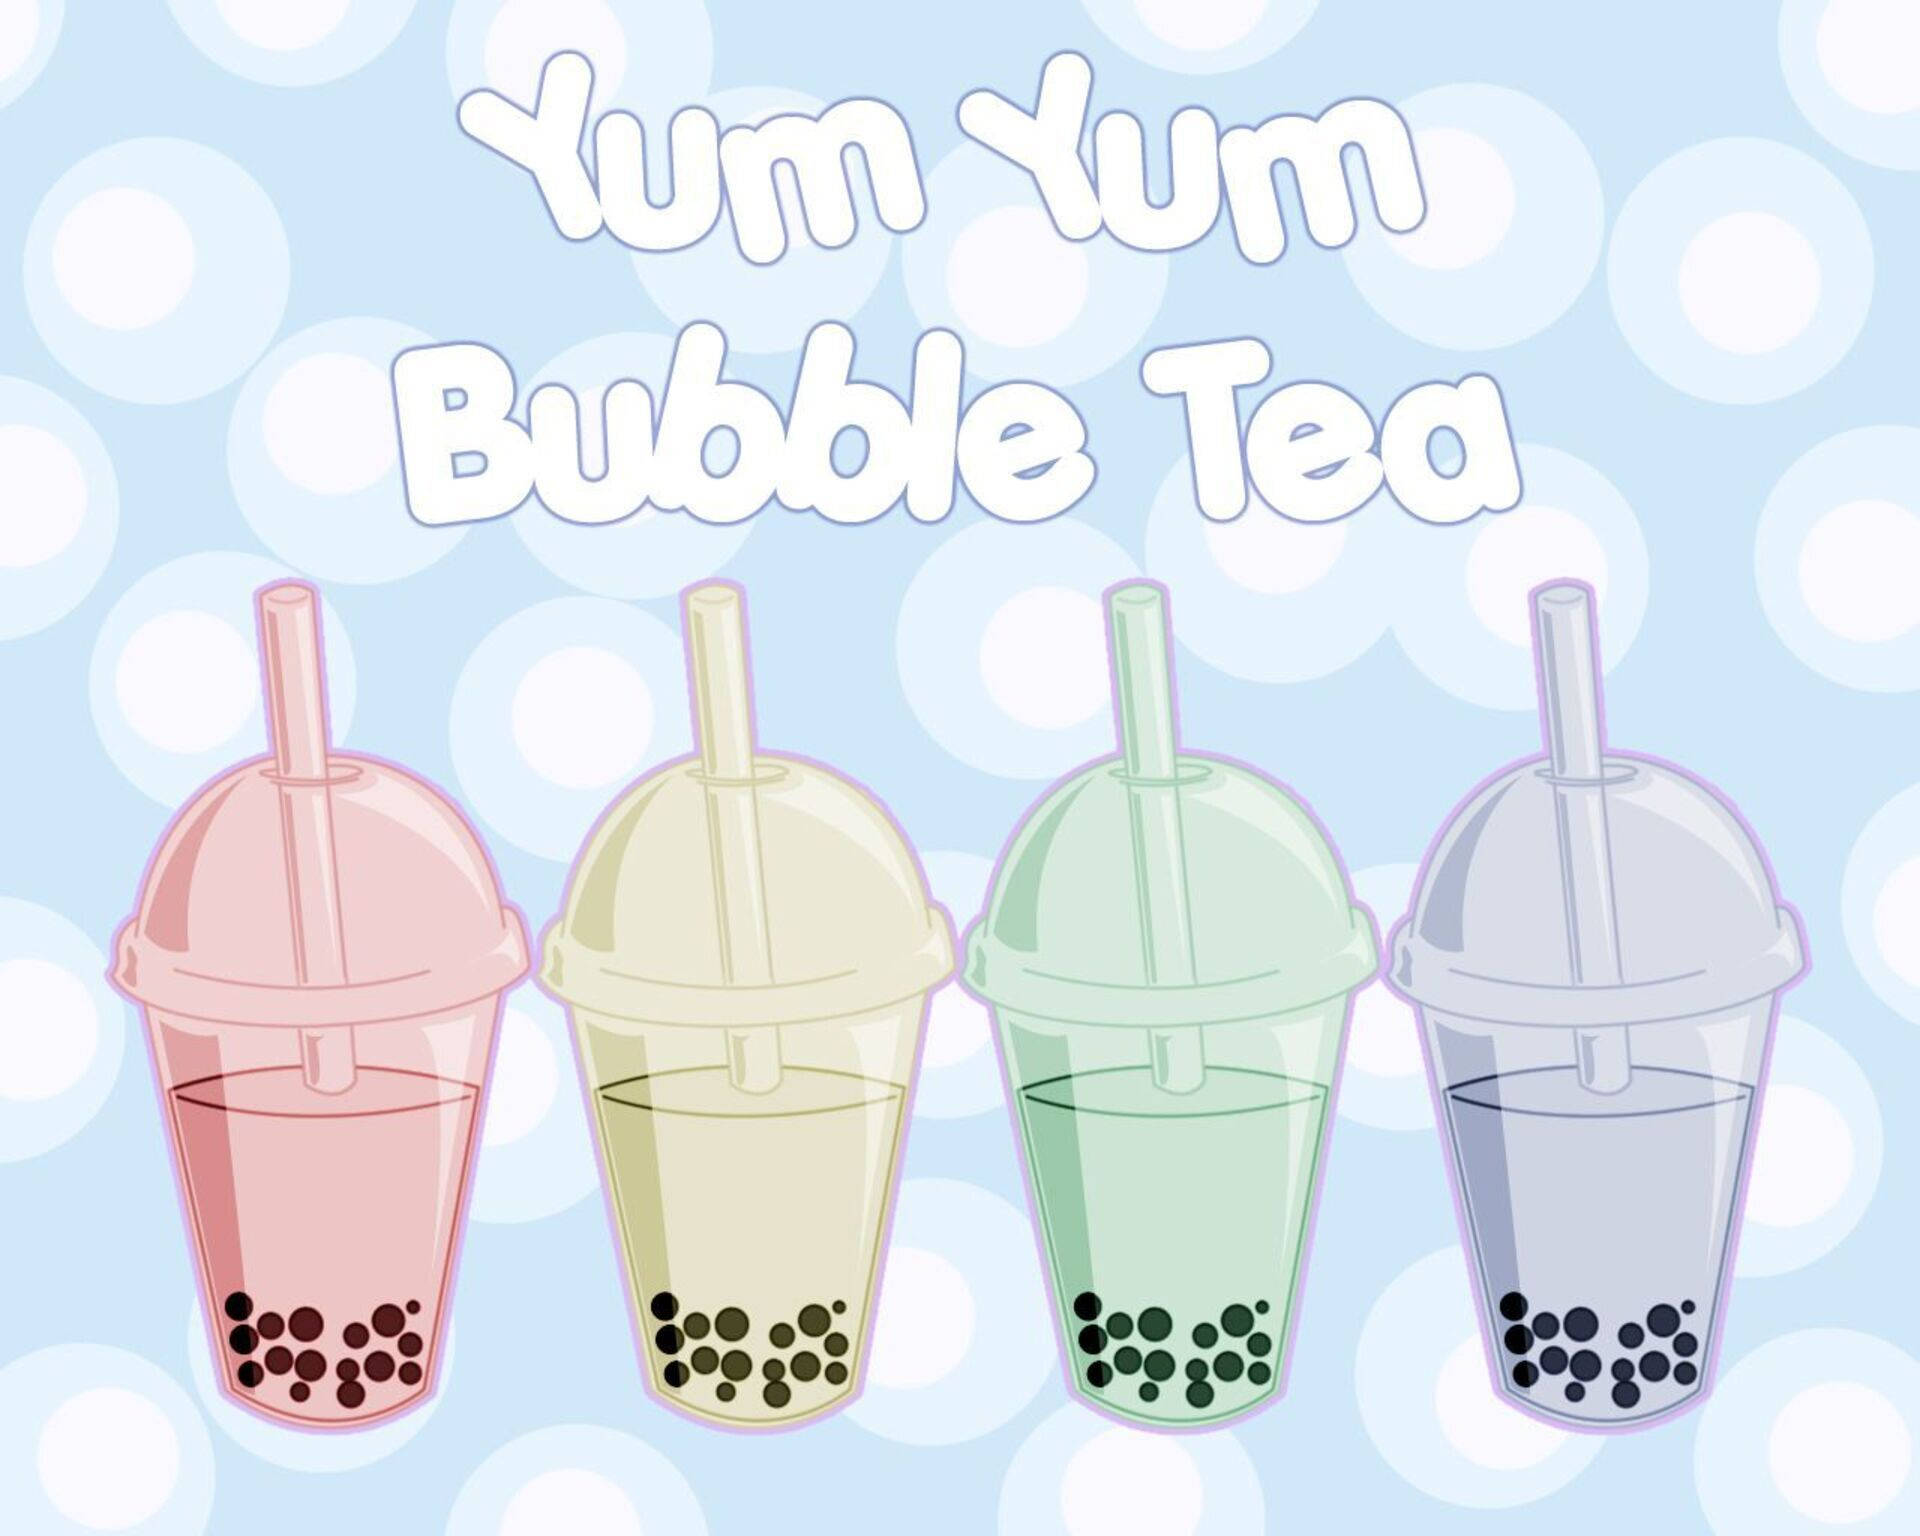 Yum Yum Bubble Tea